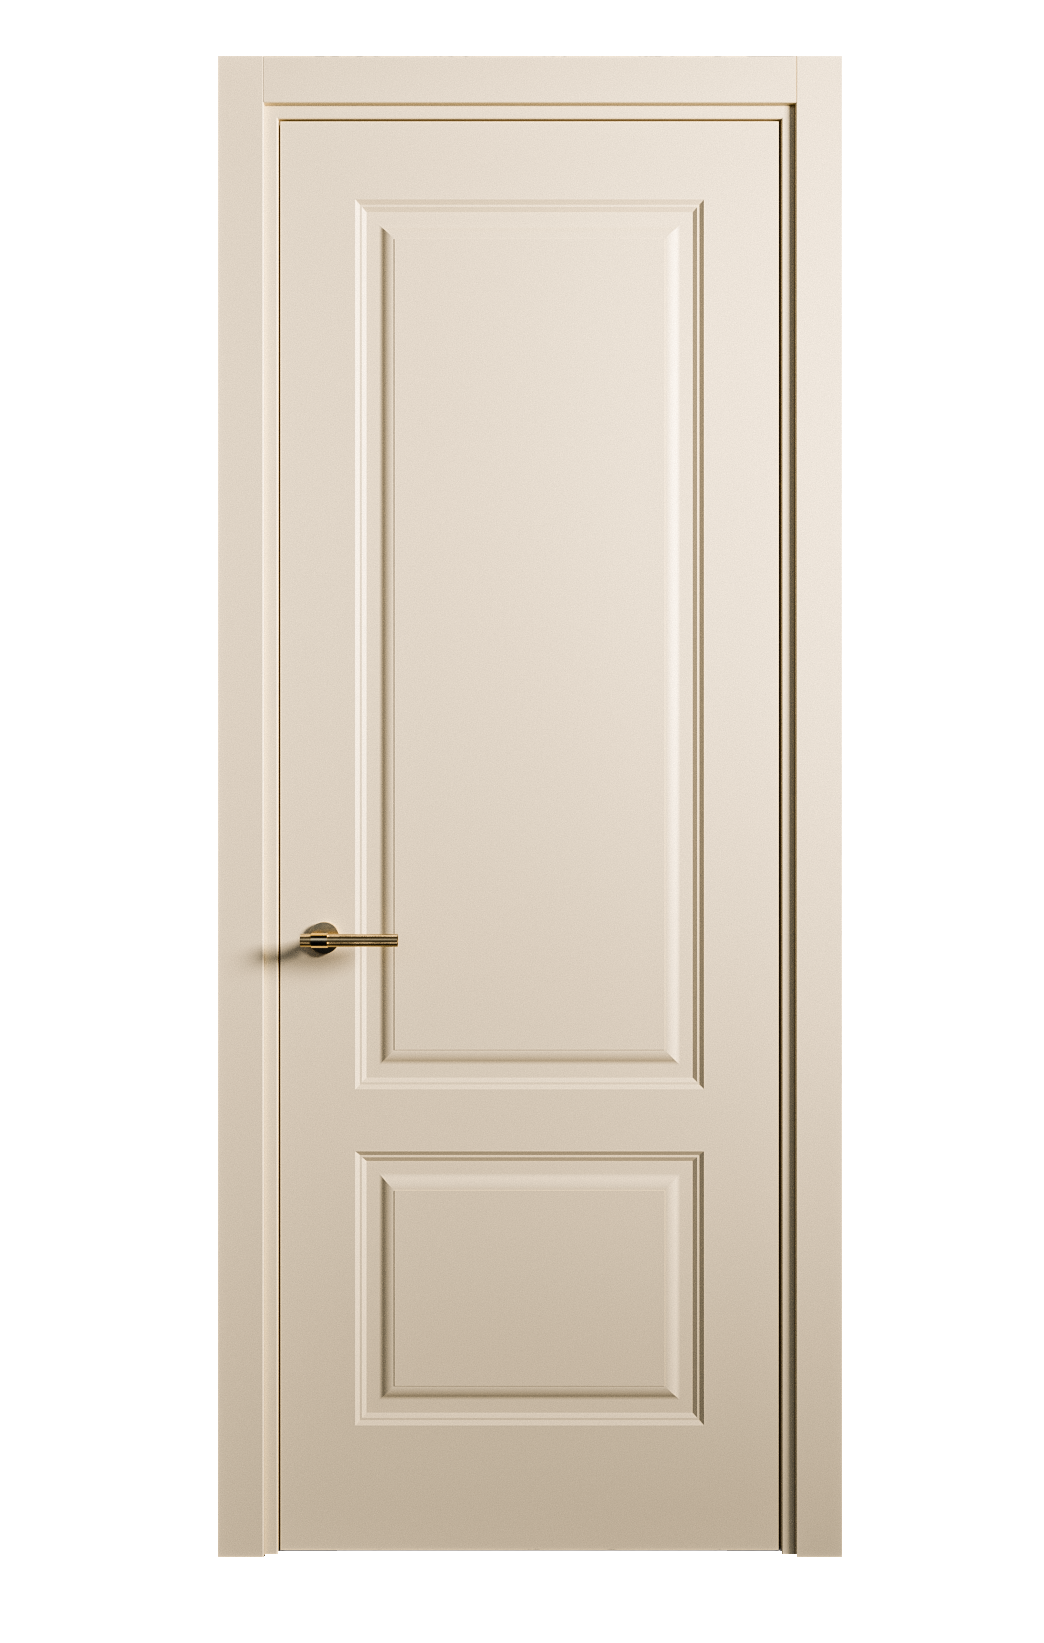 Межкомнатная дверь Вита-1 глухая эмаль ral 1015 26229